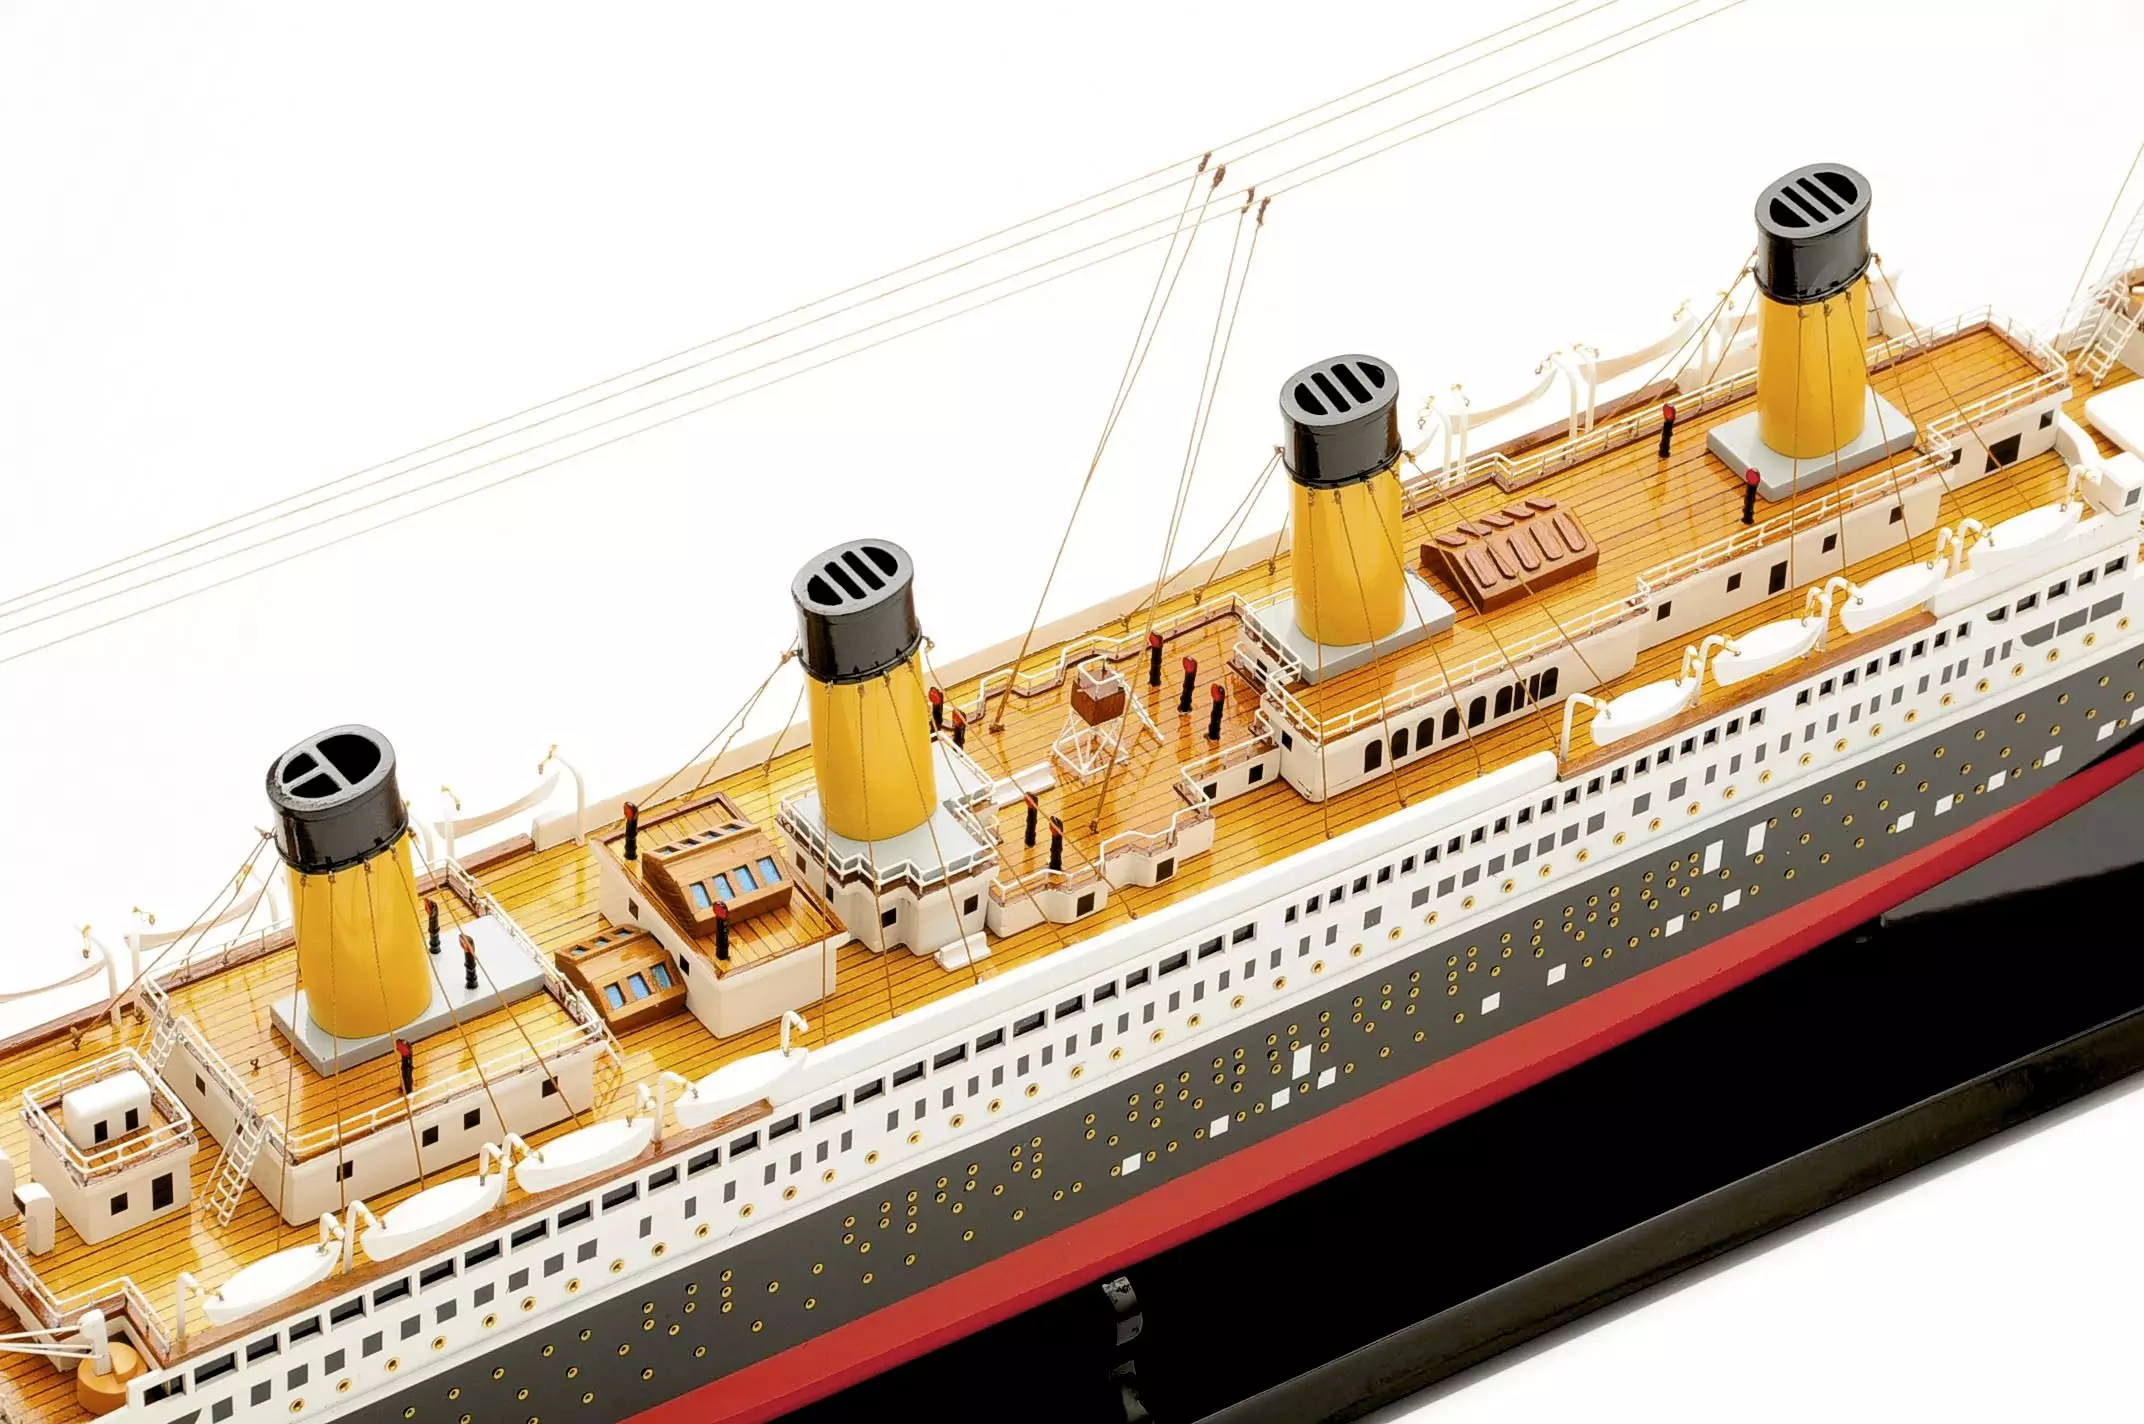 Maquette Titanic - RMS Titanic